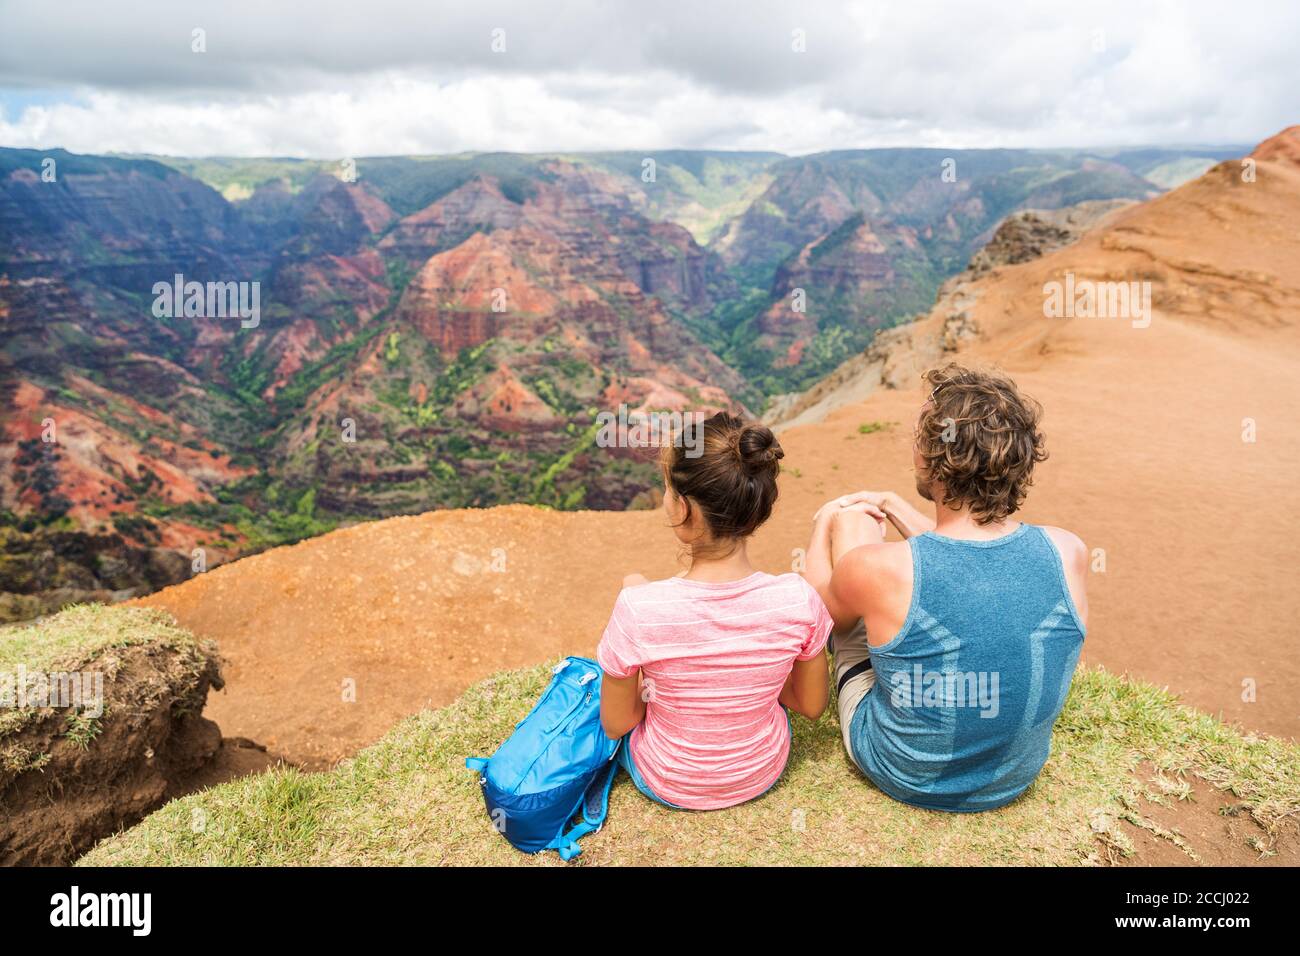 Hawaii Kauai nature hiking couple enjoying view Stock Photo